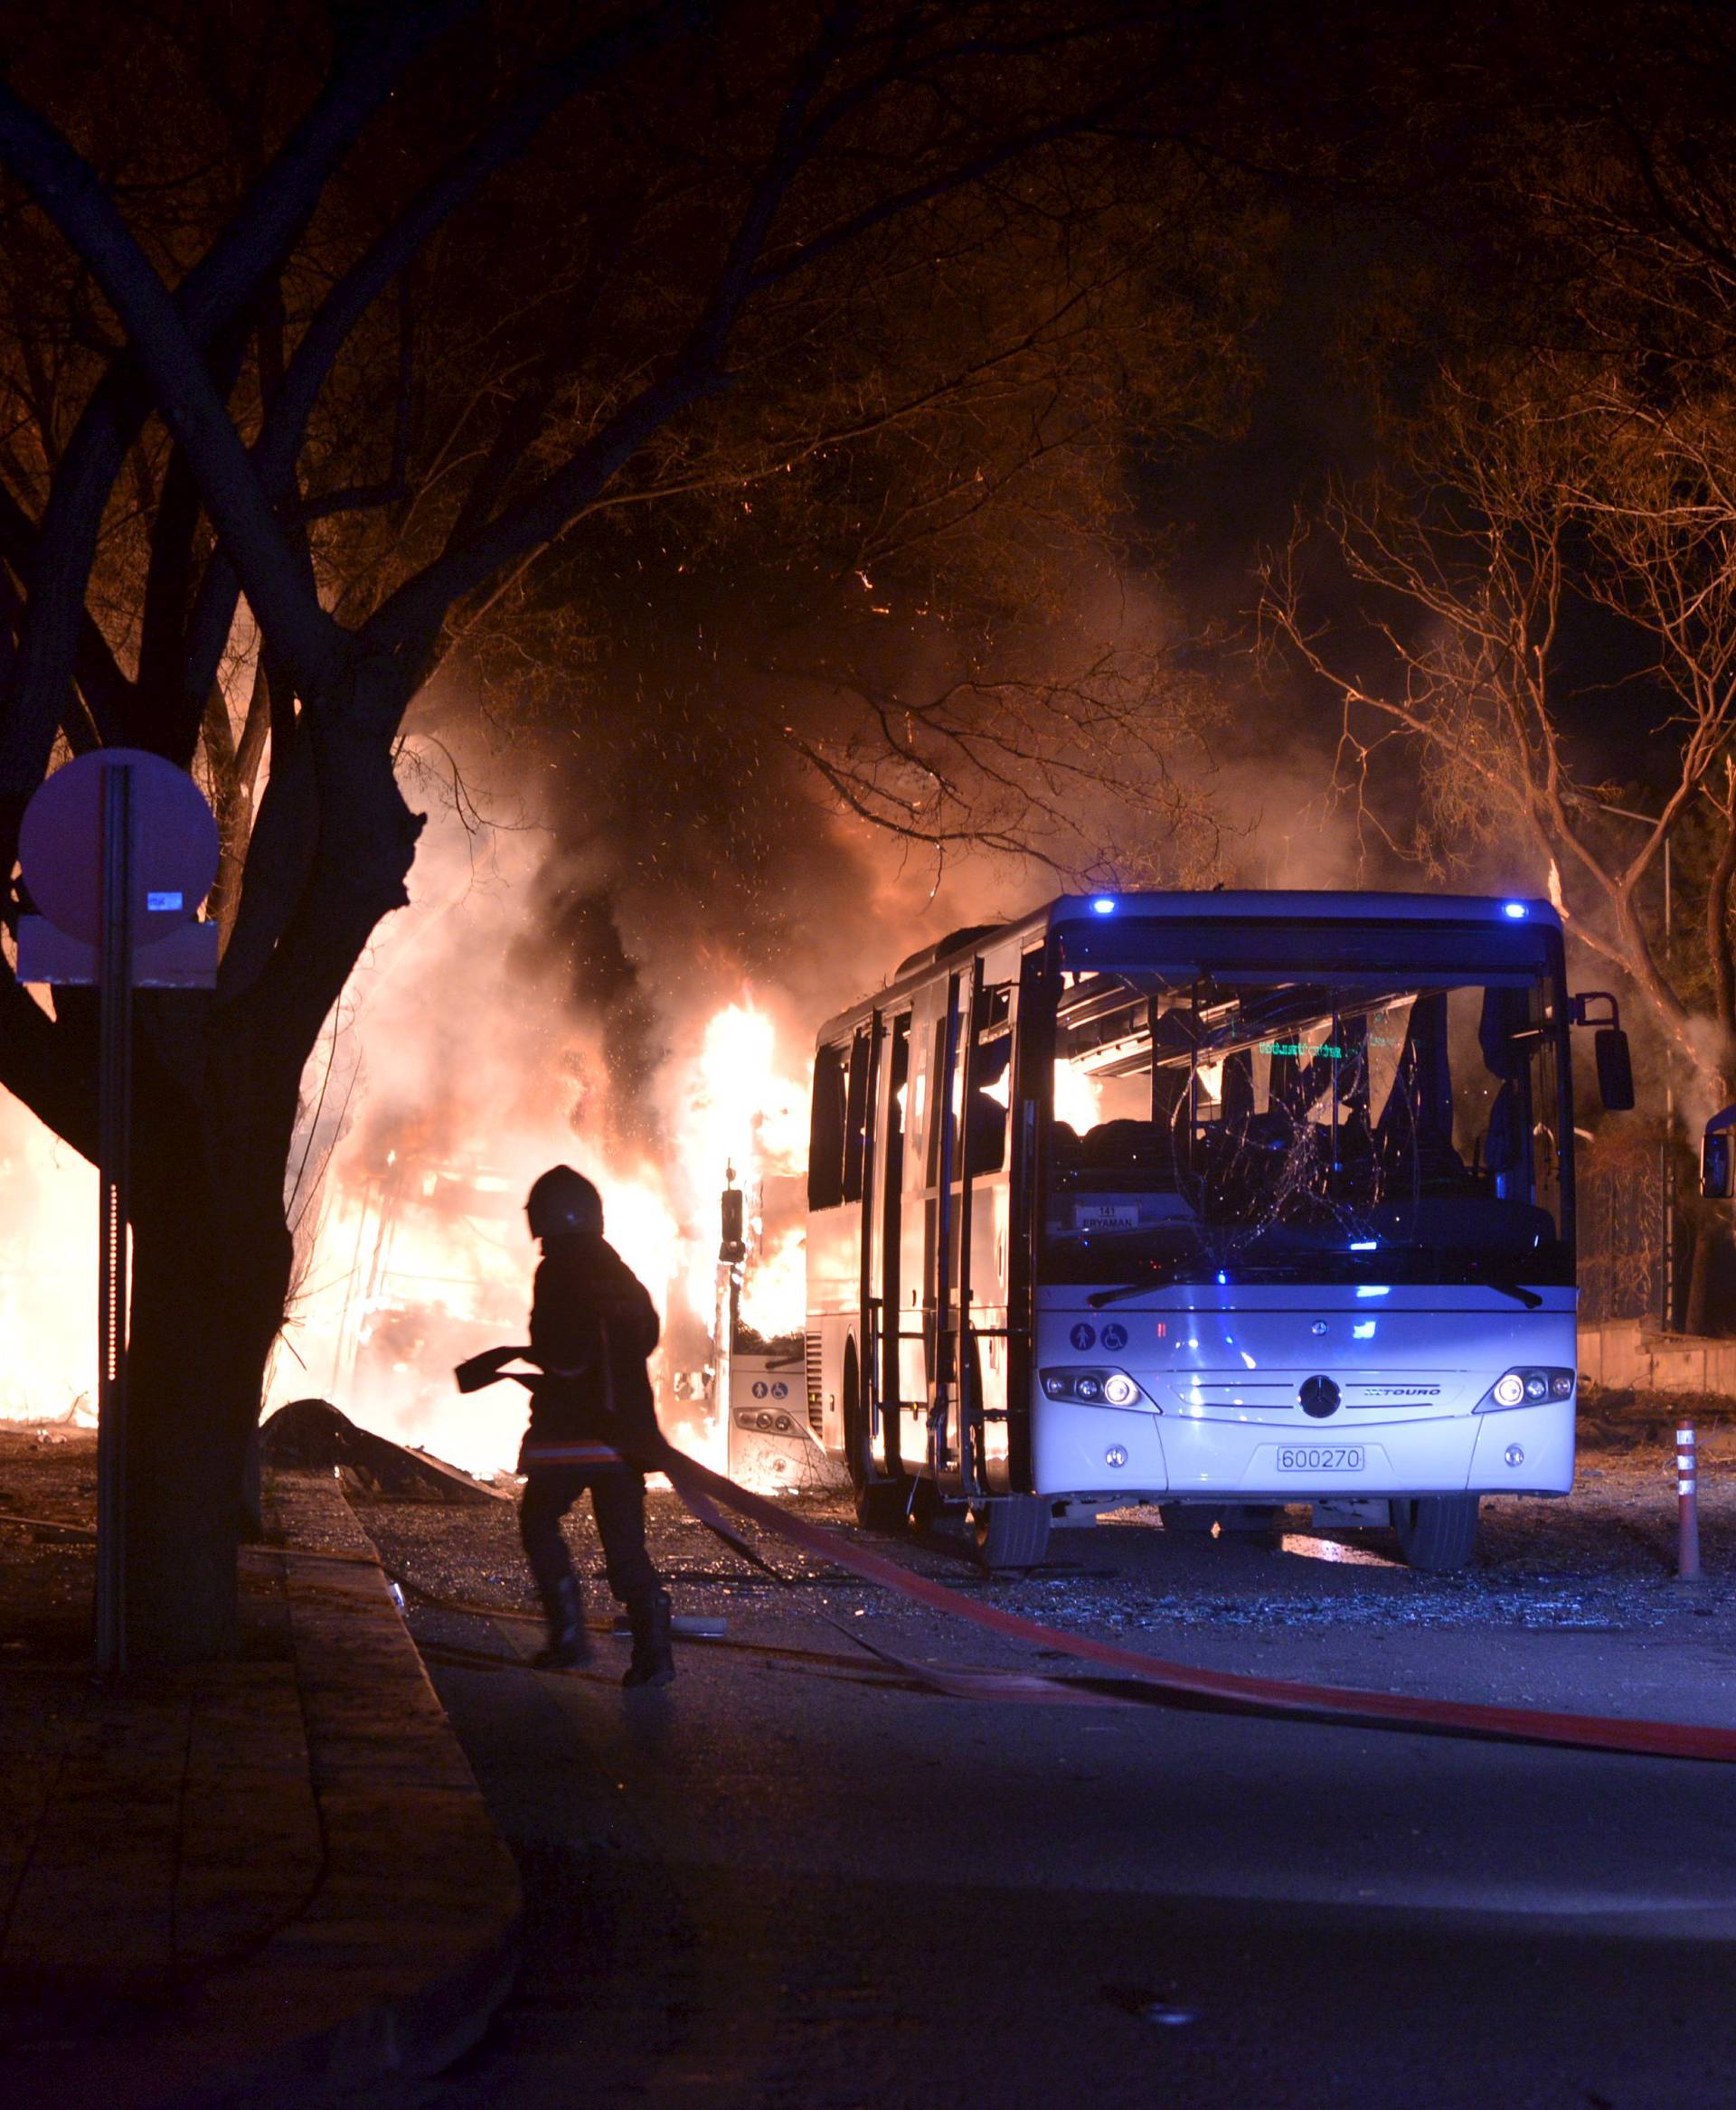 Siju strah: Ovo je već deveti napad u Turskoj u ovoj godini